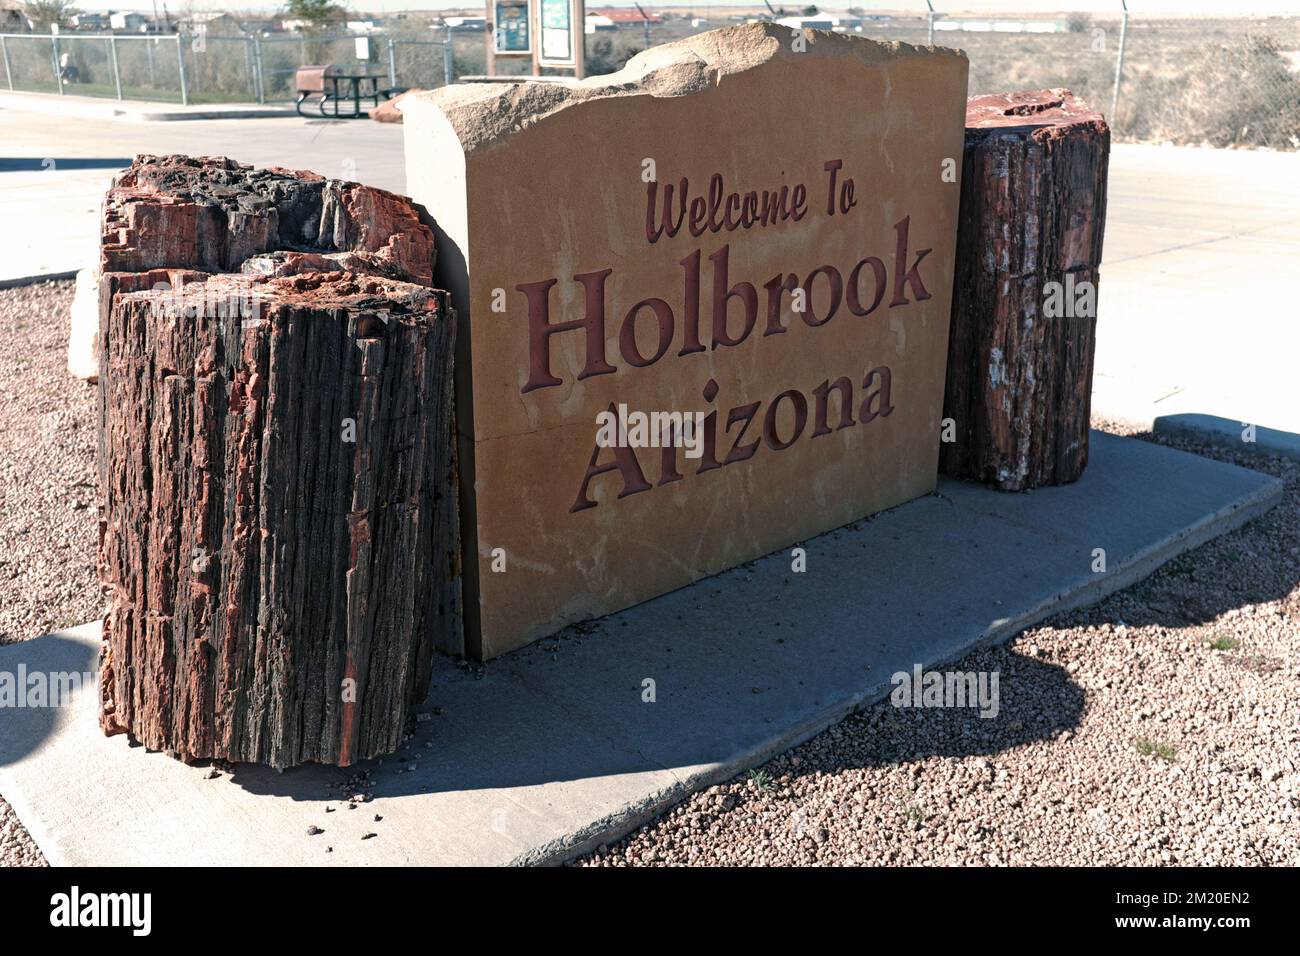 Un cartel da la bienvenida a los visitantes de Holbrook, Arizona, a lo largo de la Ruta 66 en el desierto suroeste. Foto de stock